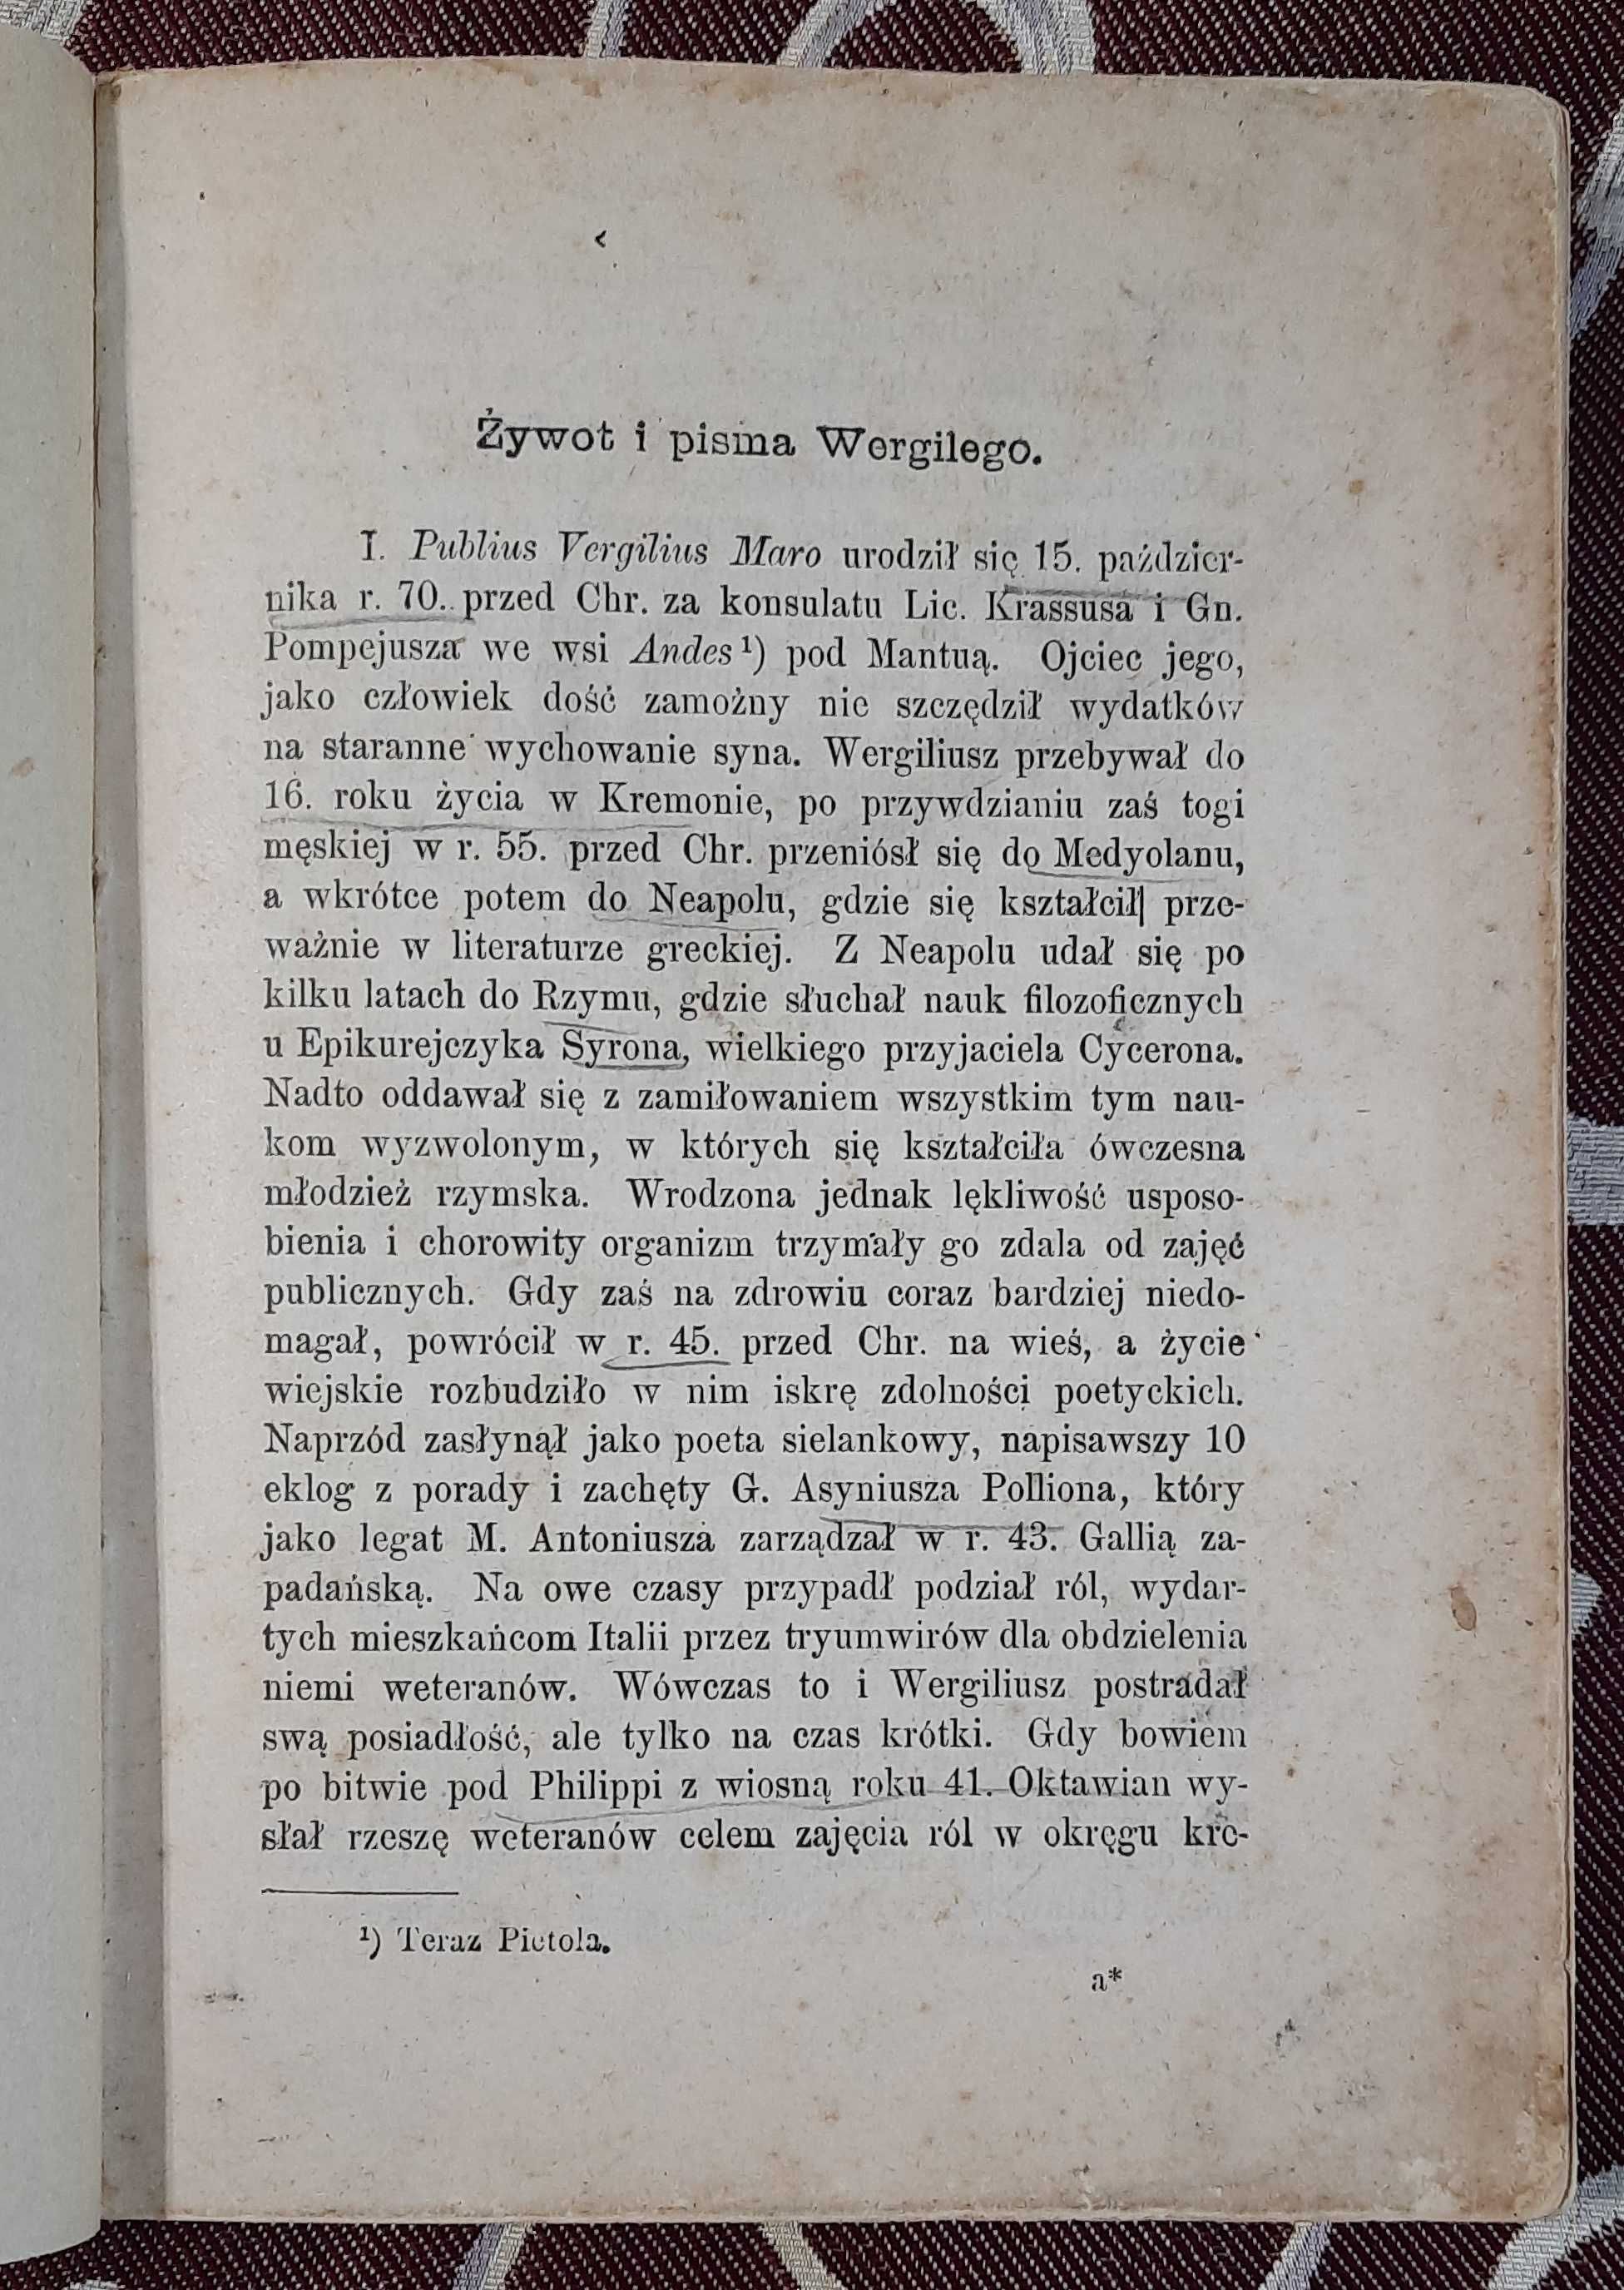 Вибрані вірші П. Вергіле Марона, 1912 ( польською)